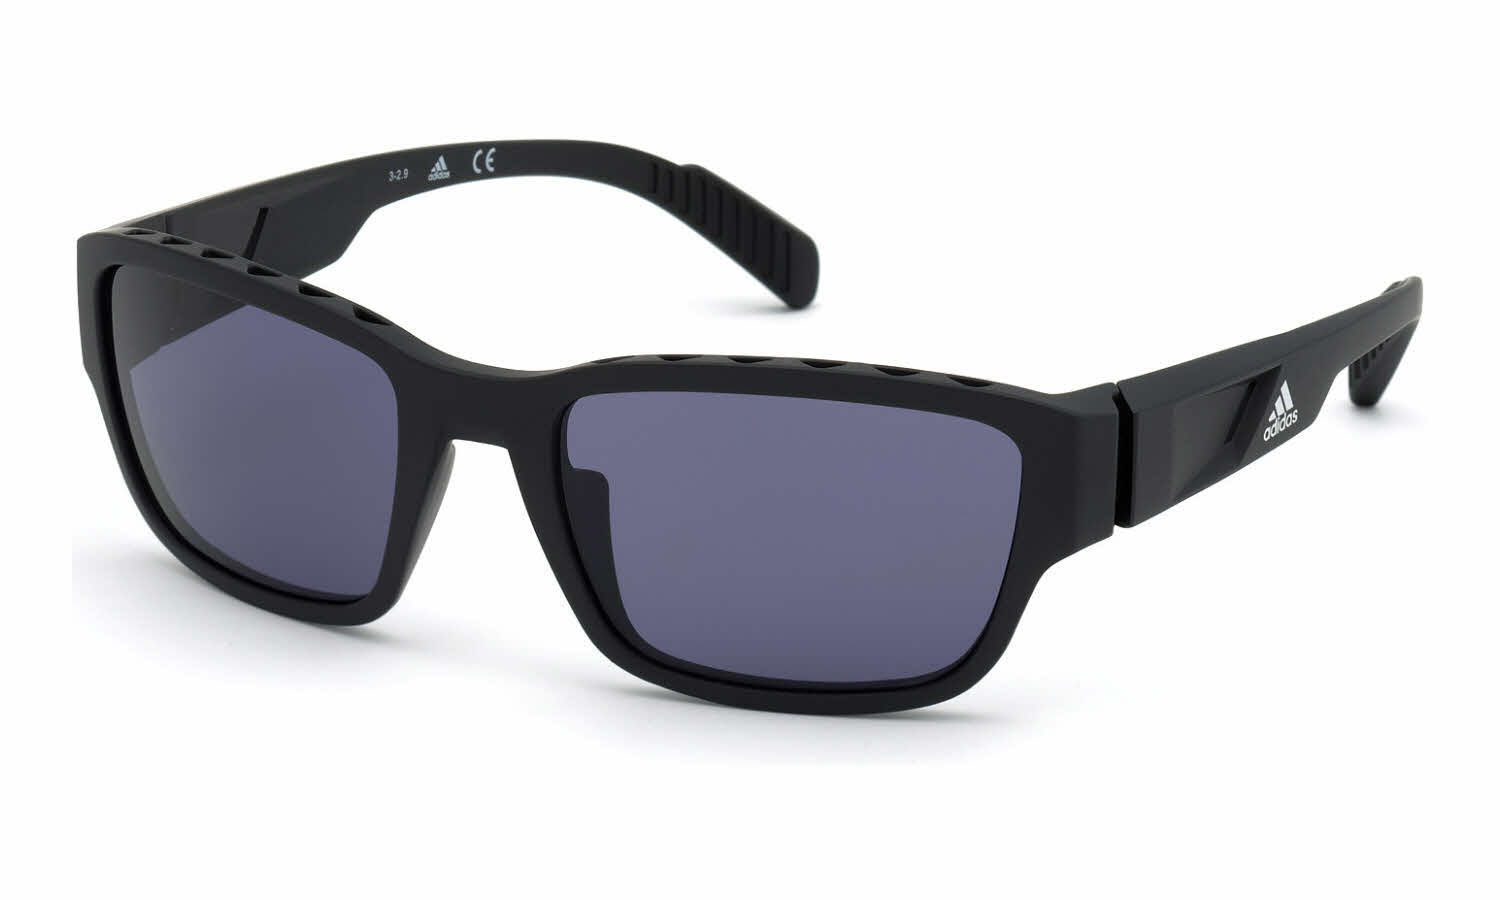 SP0007 Sunglasses | FramesDirect.com